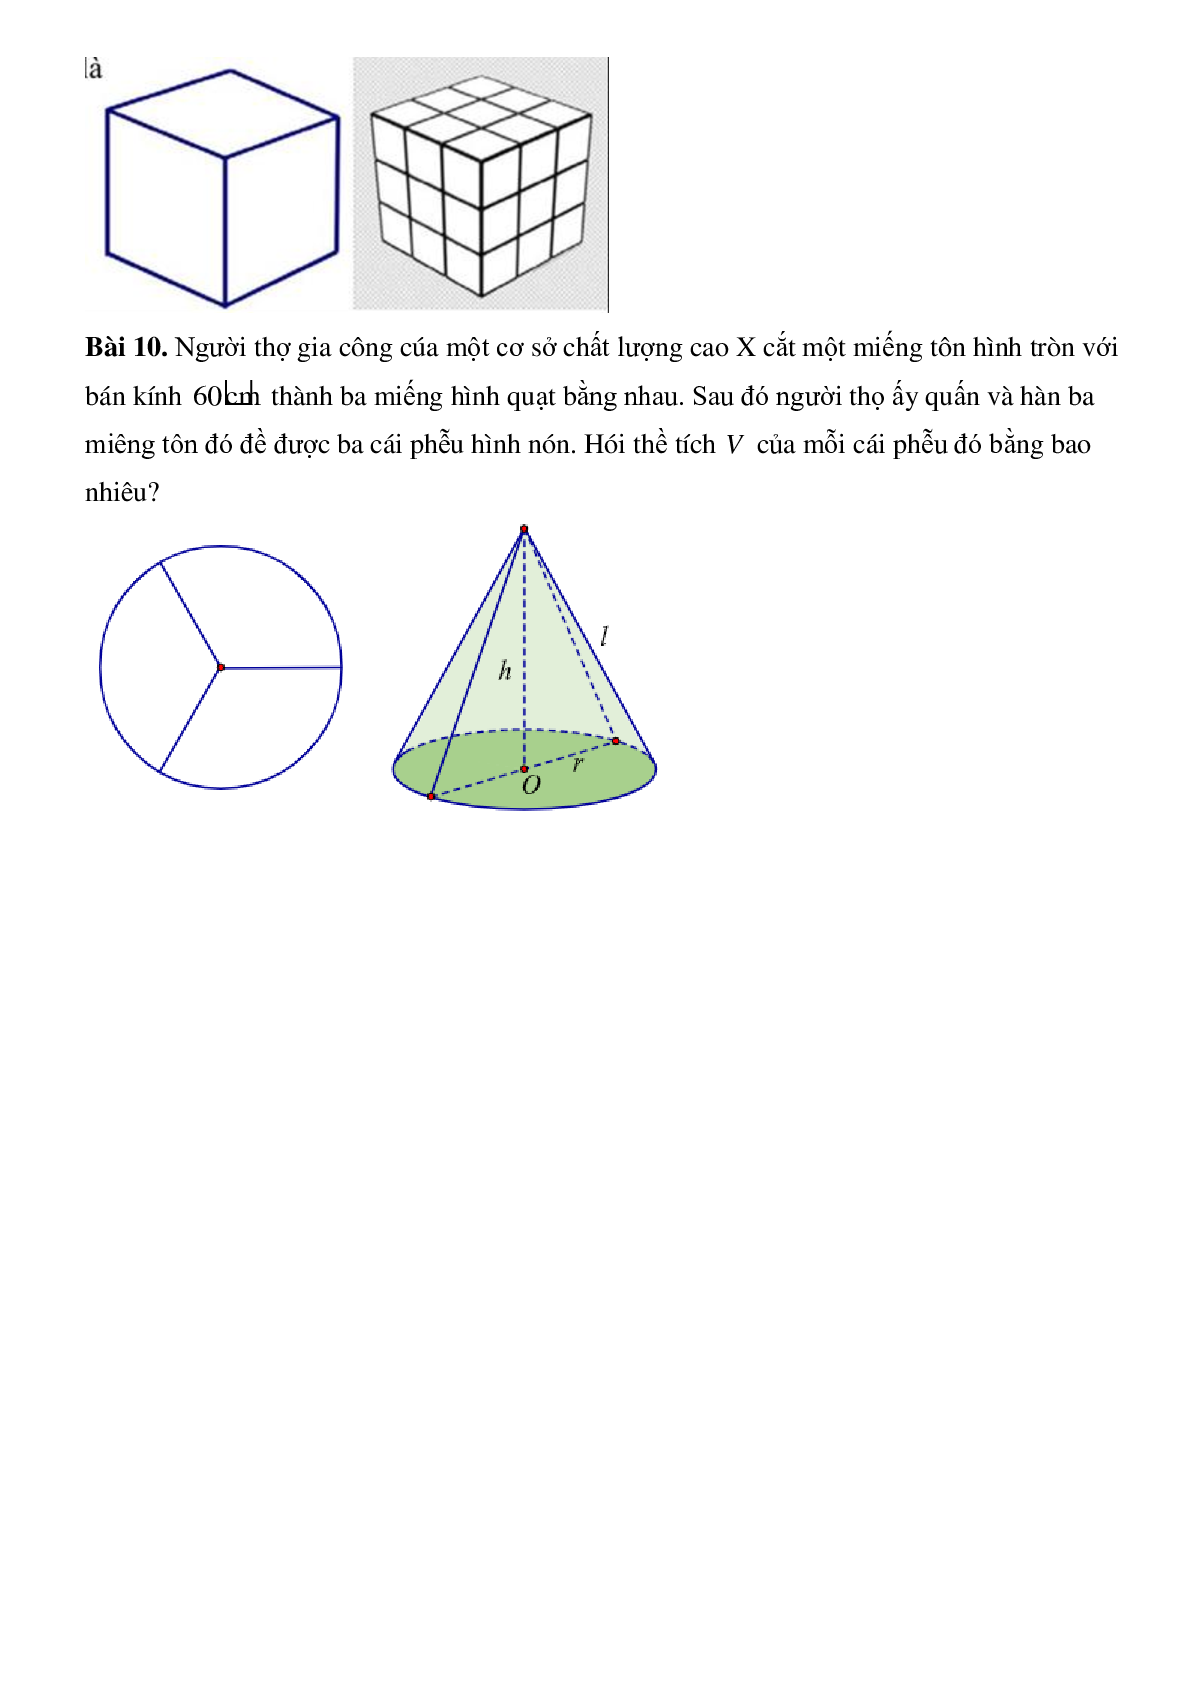 Bài toán thực tế sử dụng yếu tố hình học (trang 5)